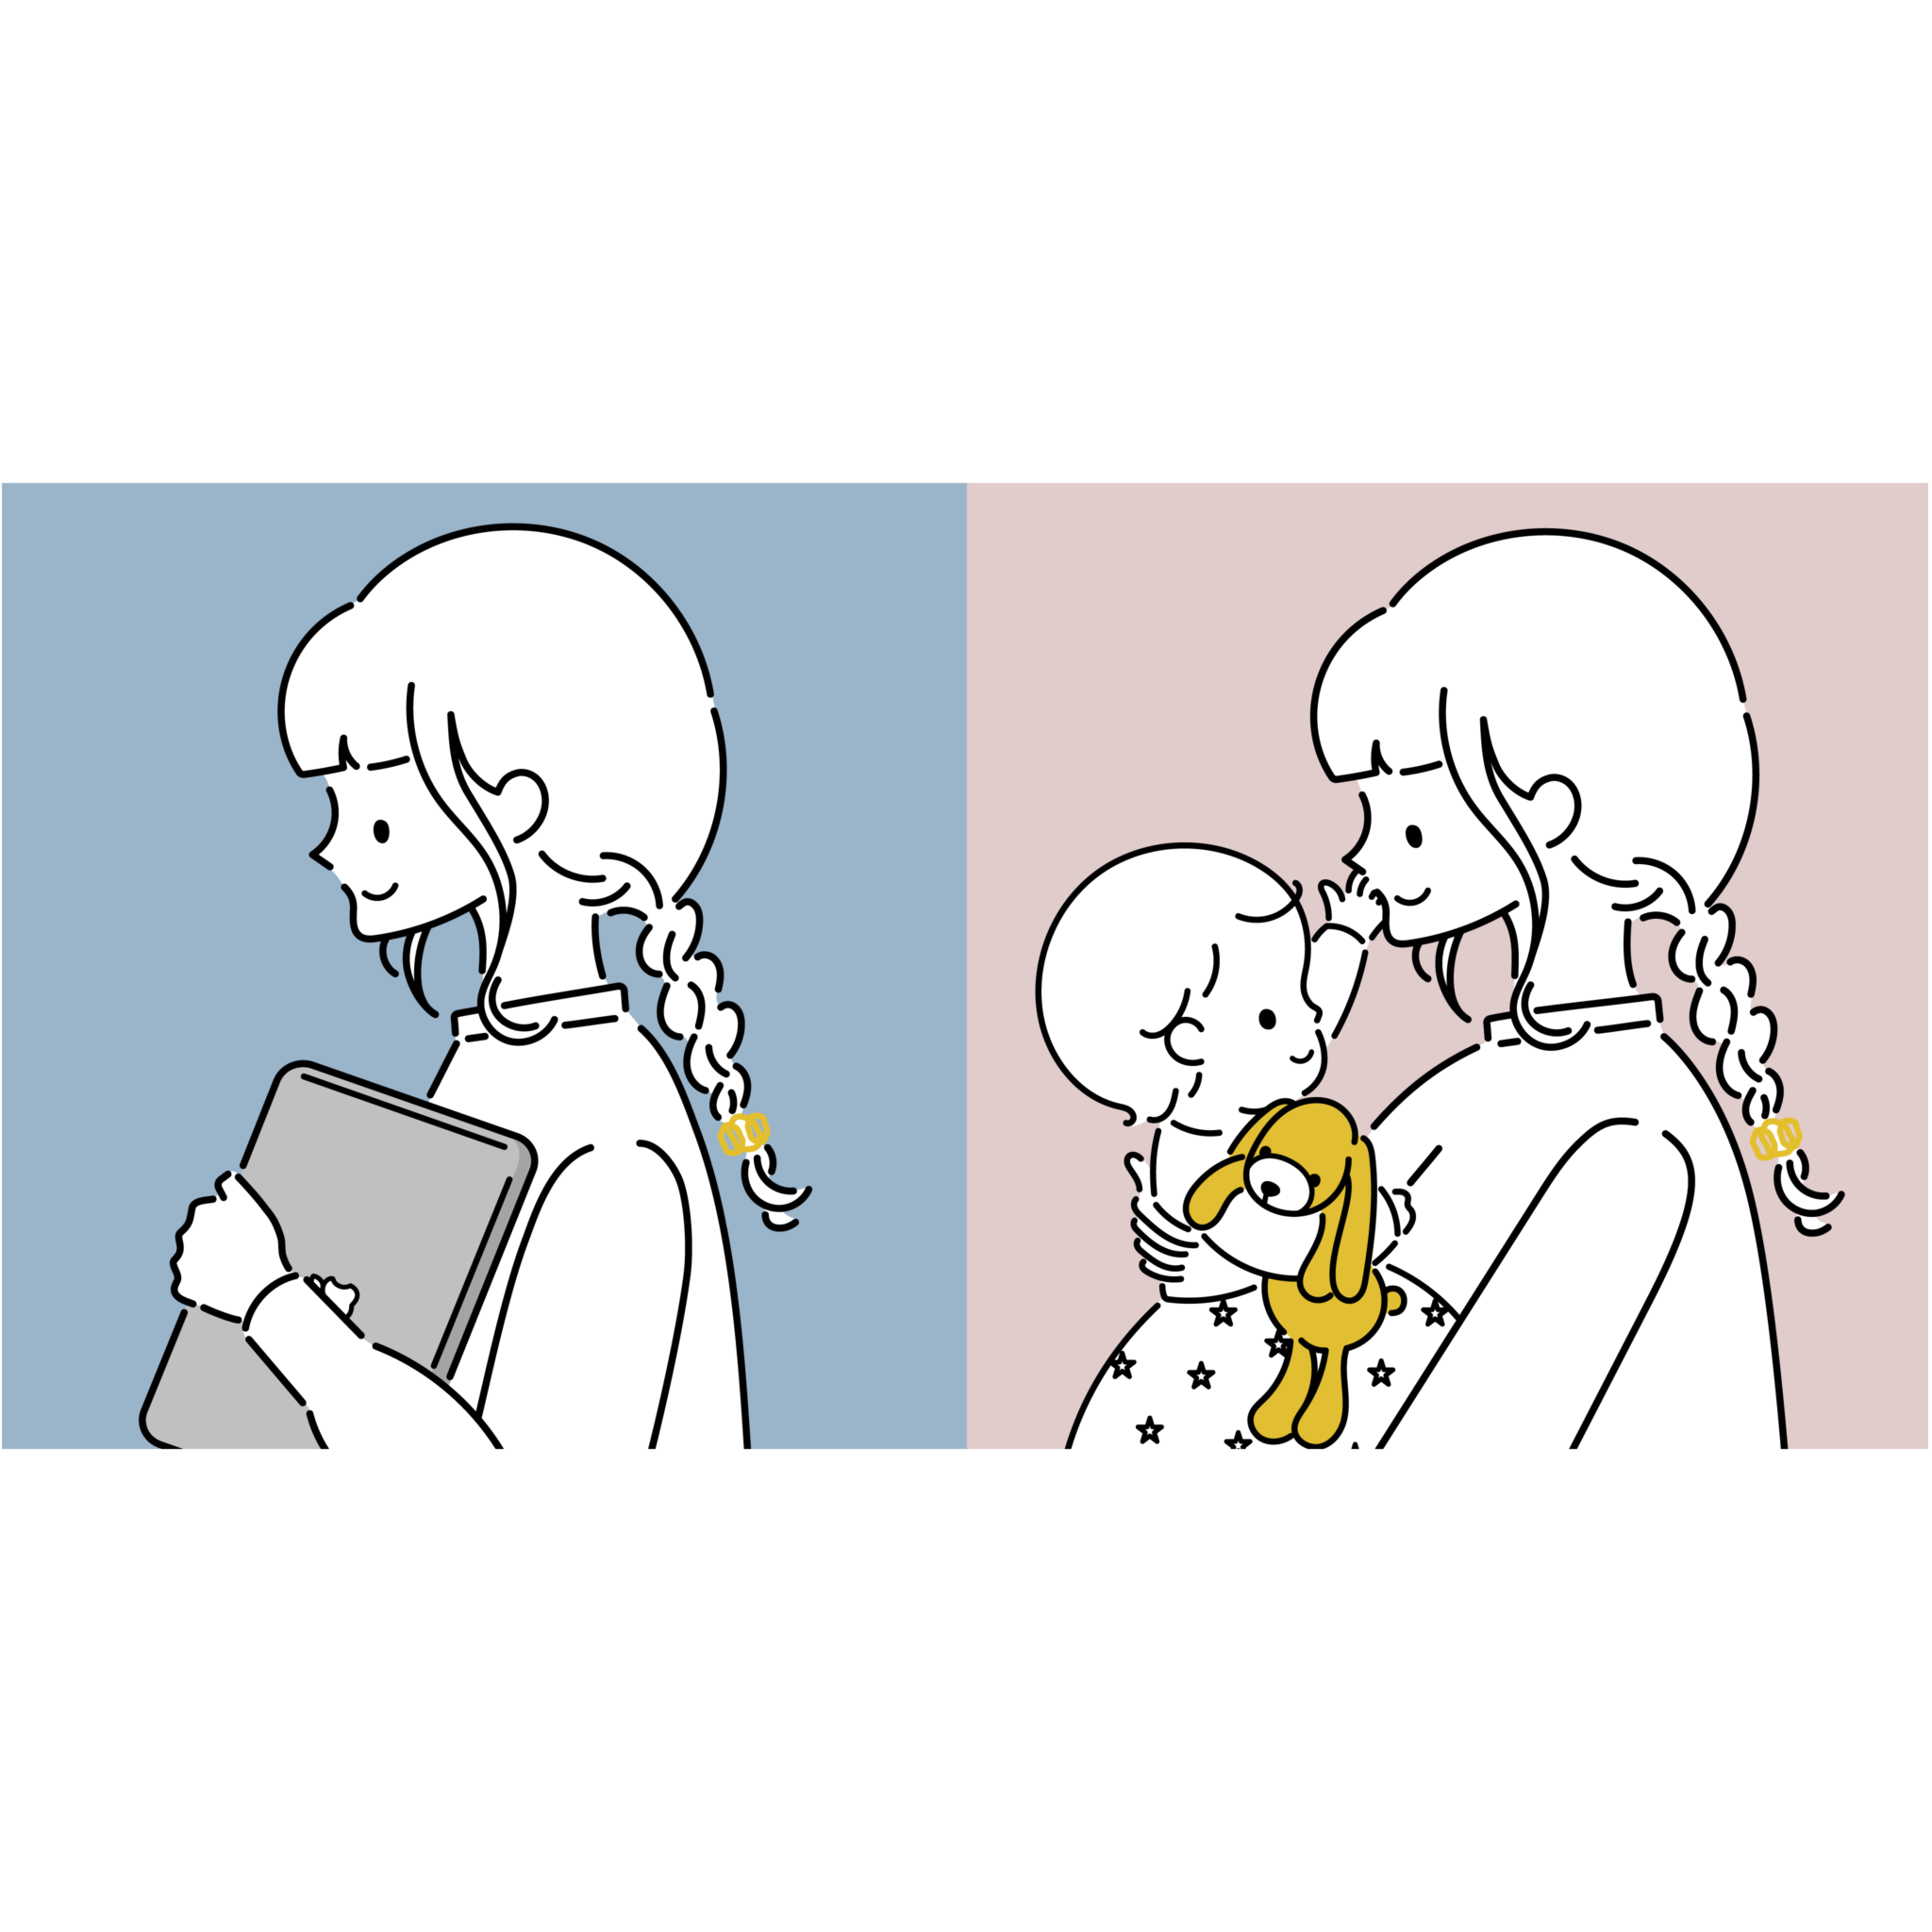 女性がパソコンを持っているイラストと、女性が赤ちゃんを抱っこしているイラスト